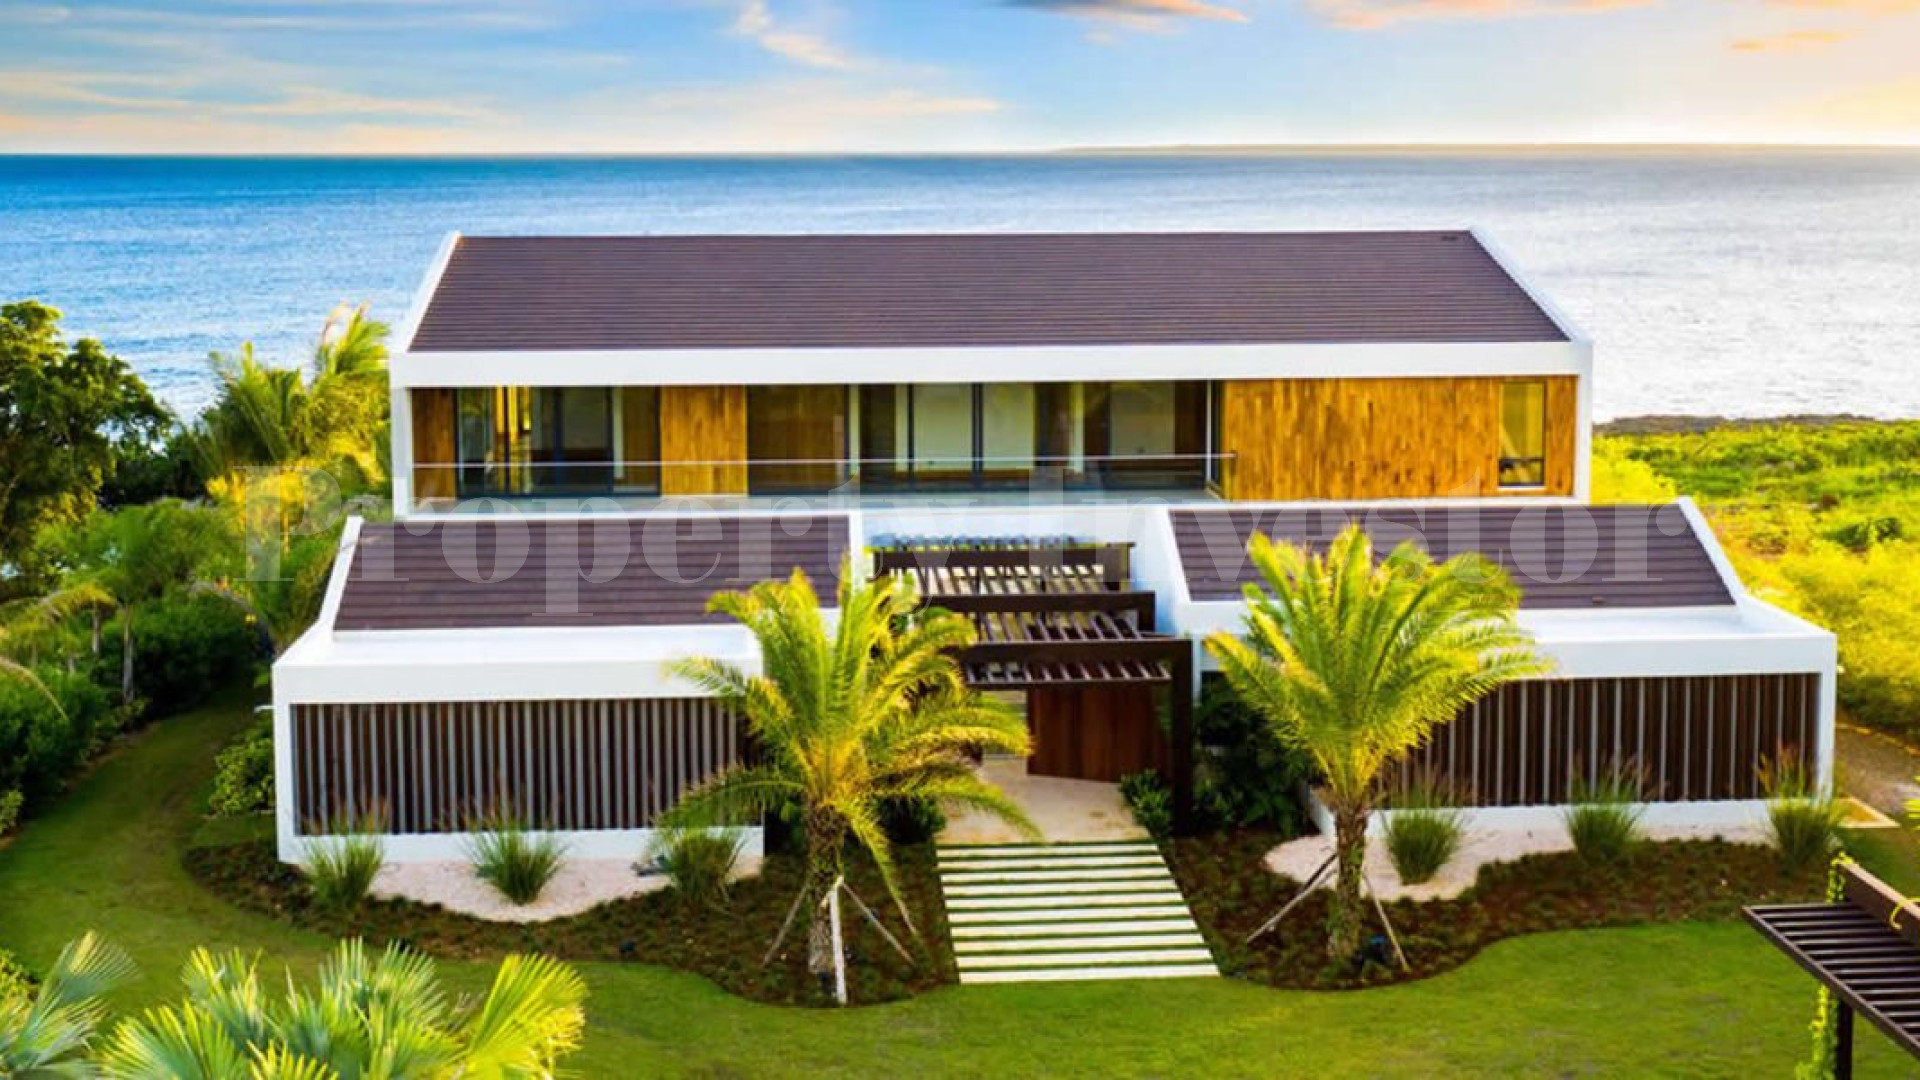 Невероятная роскошная вилла с 7 спальнями на пляже в Ла Романа, Доминиканская республика